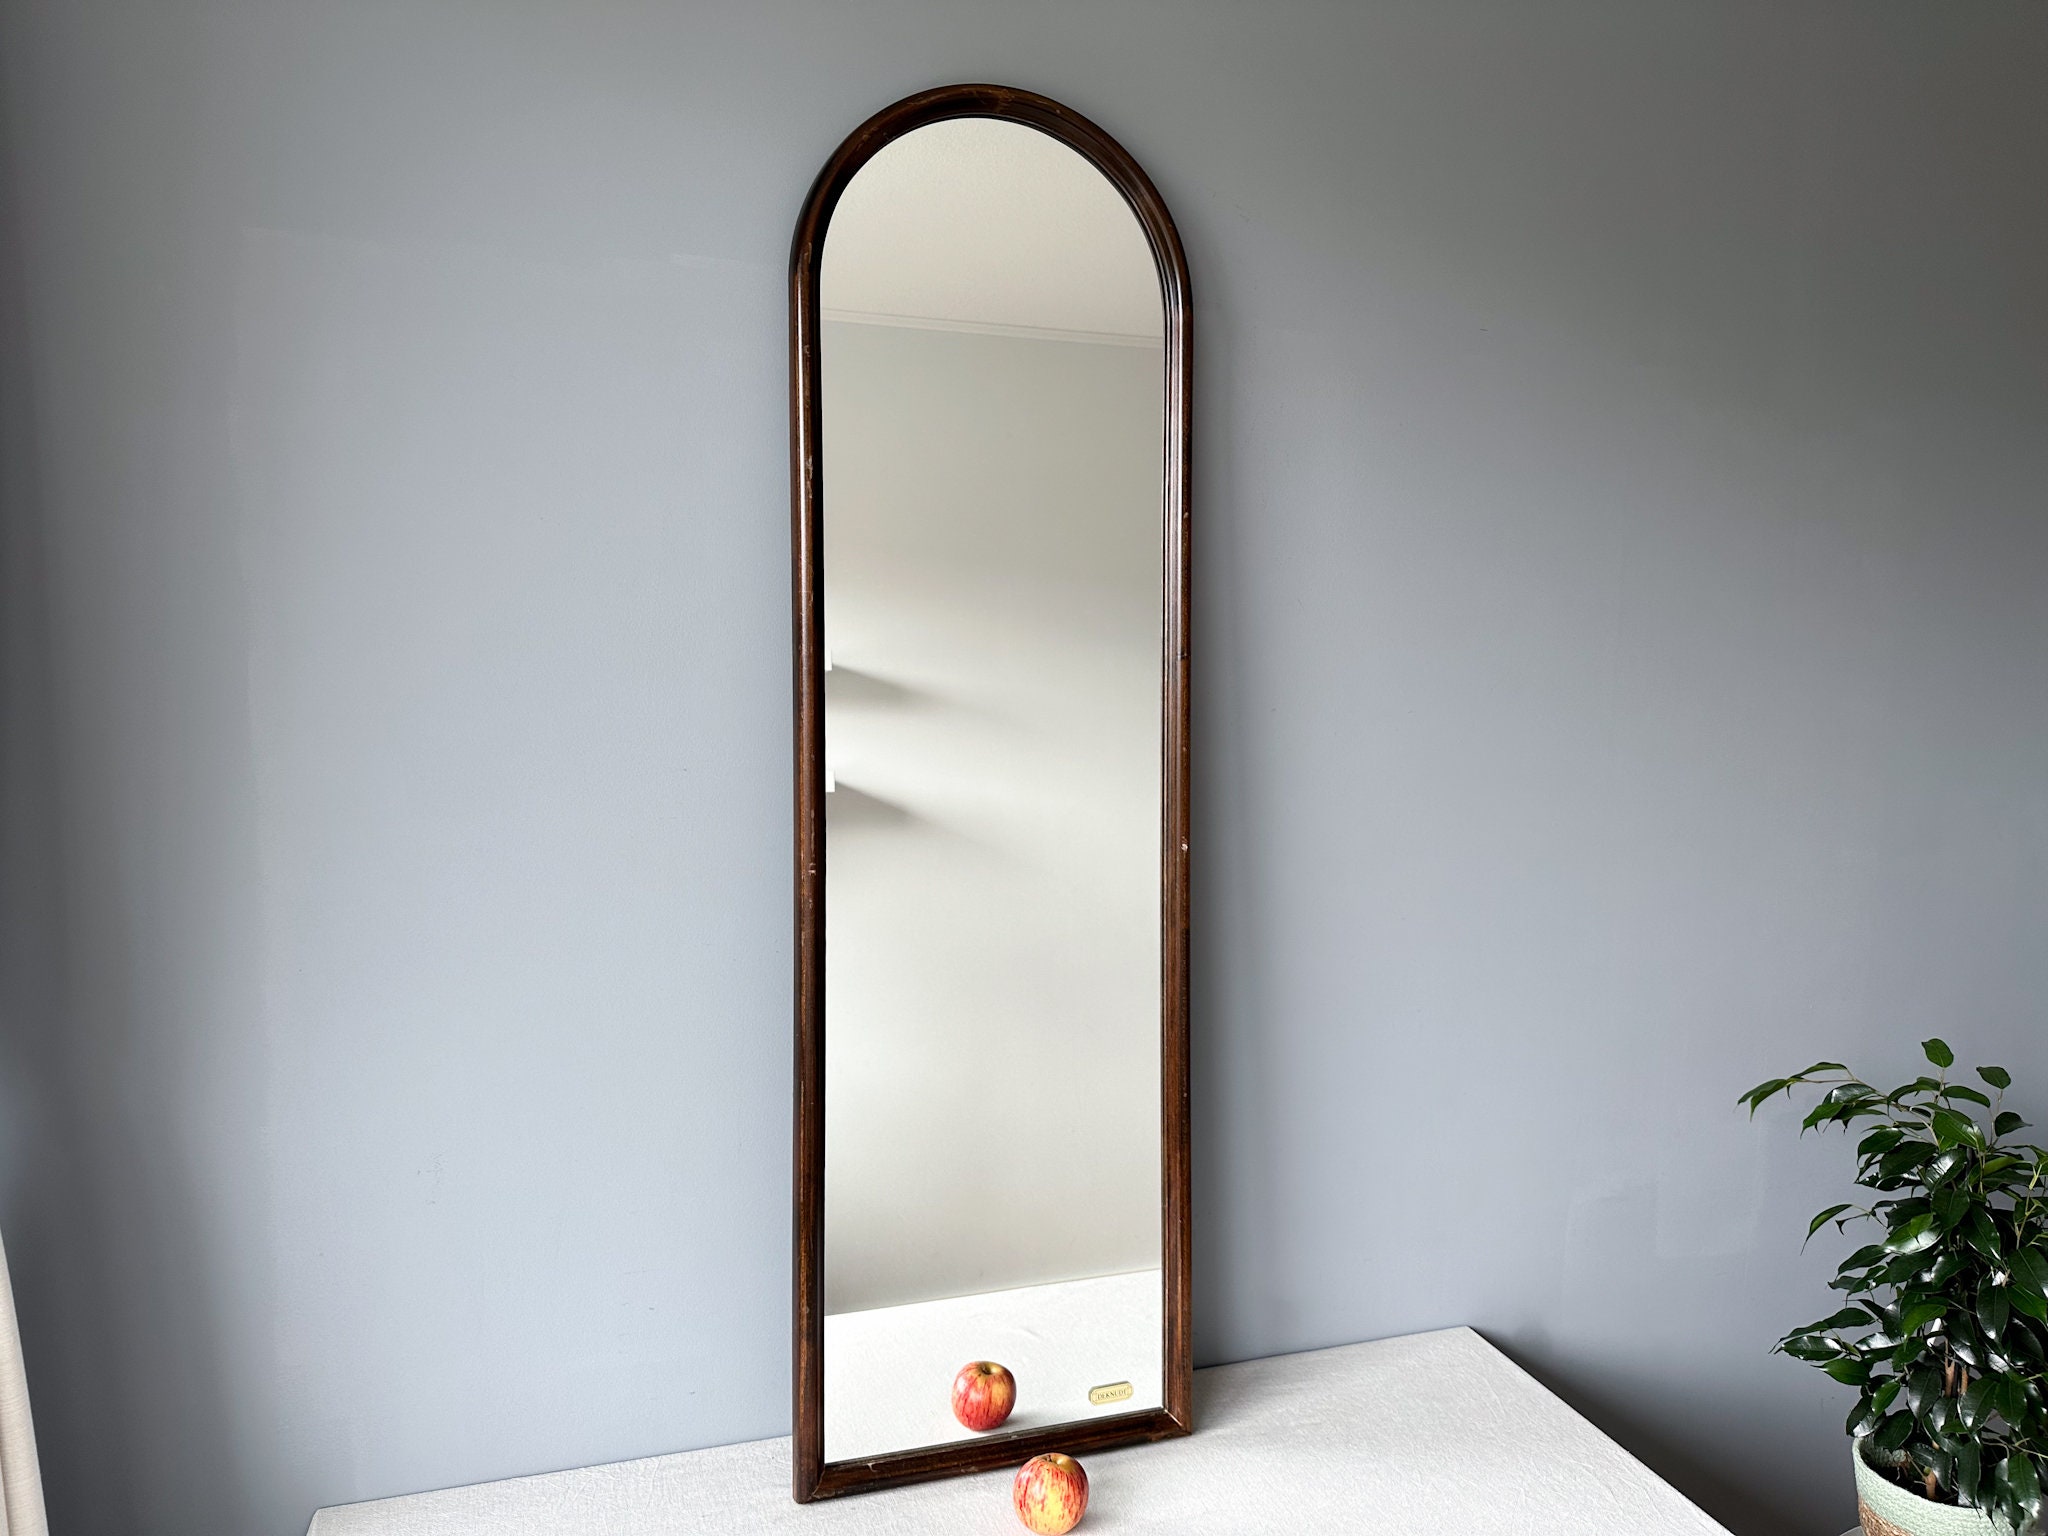 ZMYCZ Wandspiegel, gewölbter Badezimmerspiegel, Bauernhaus-Fensterspiegel  für Wand, gewölbter Spiegel mit Metallrahmen, Schminkspiegel für Wohnzimmer